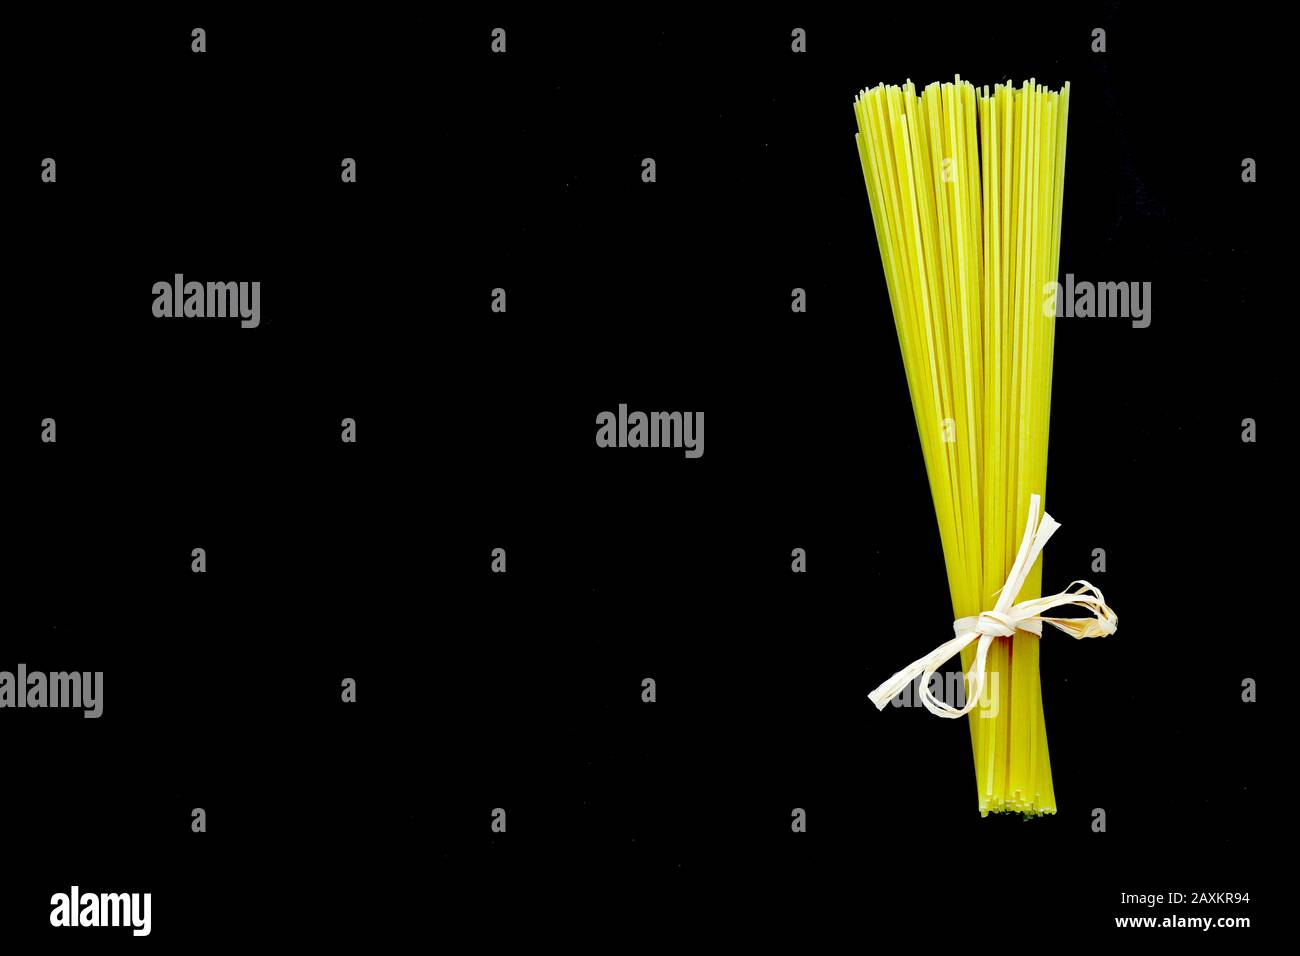 Spaghetti trecce legati insieme ad un arco con fondo completamente nero Foto Stock